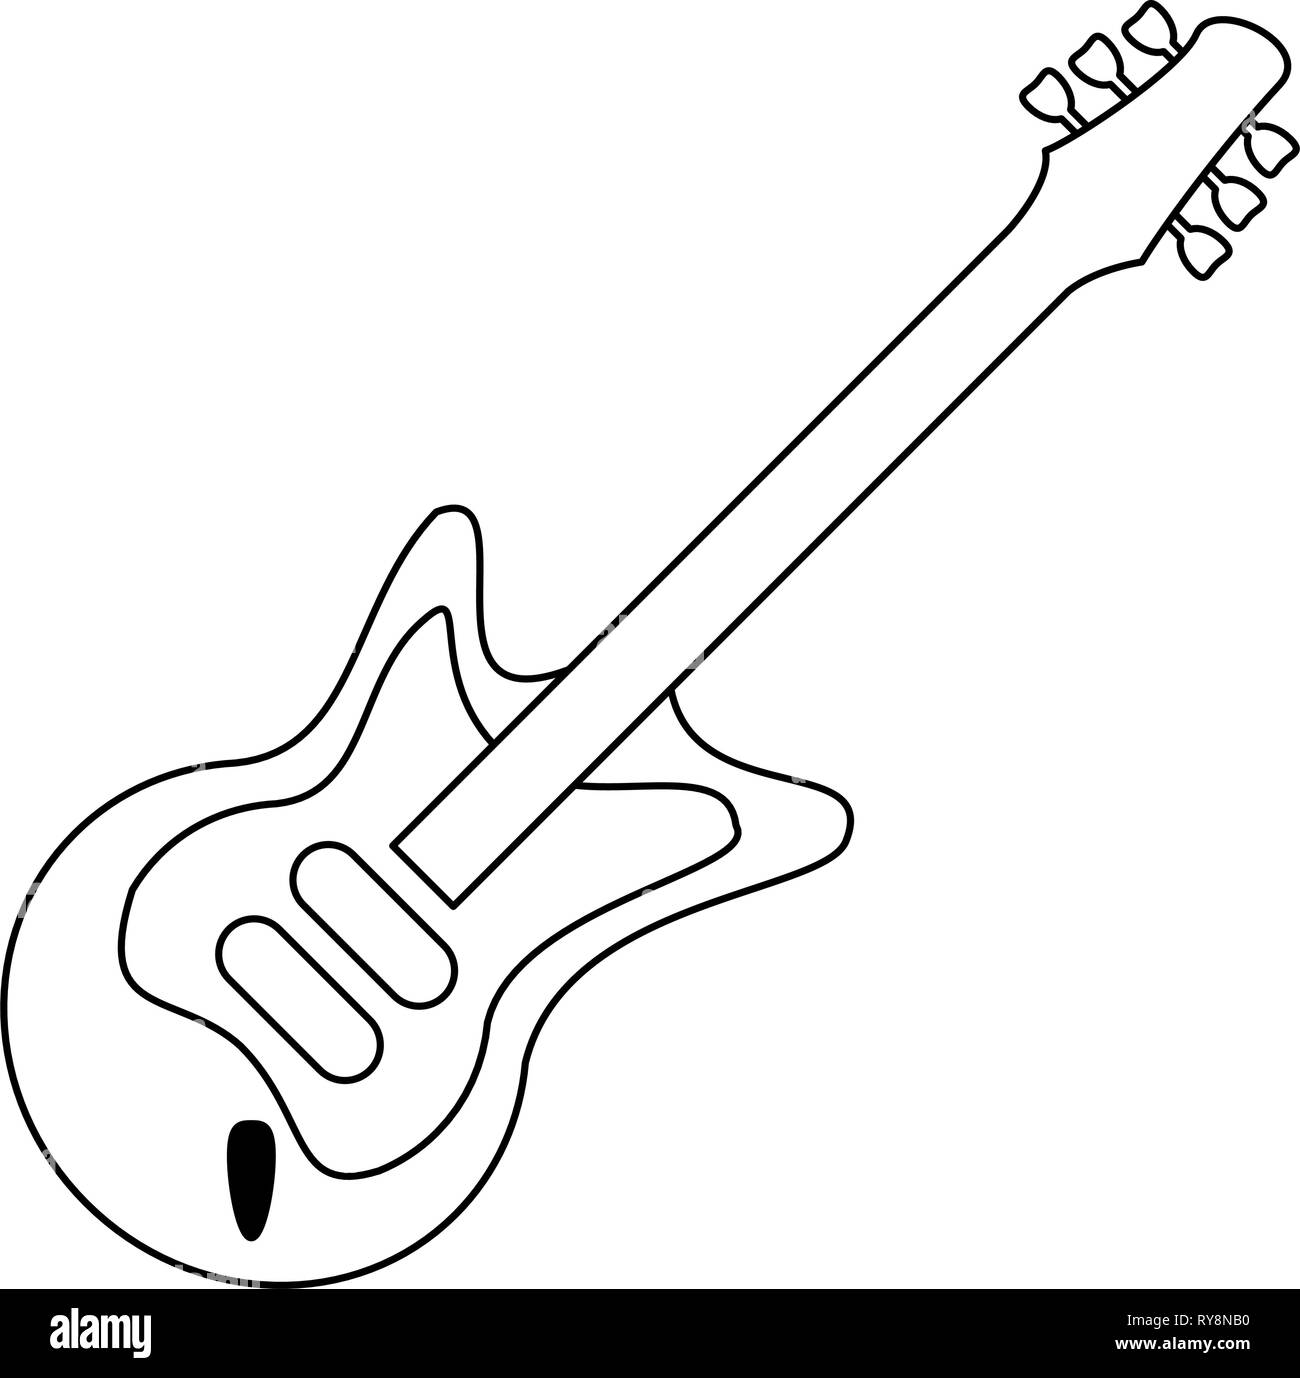 Symbole de la musique guitare électrique en noir et blanc Image Vectorielle  Stock - Alamy